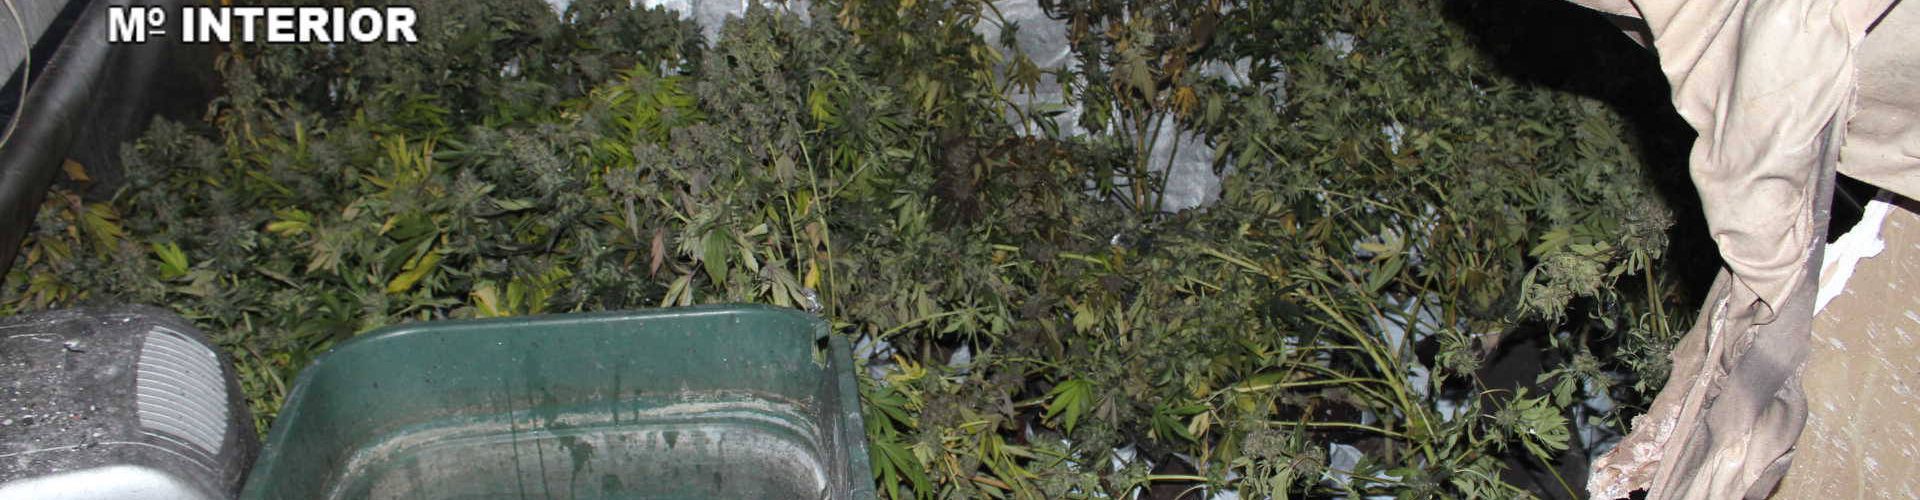 Dos detenidos y 9 kg. de cogollos de marihuana incautados tras el incendio de Vinaròs